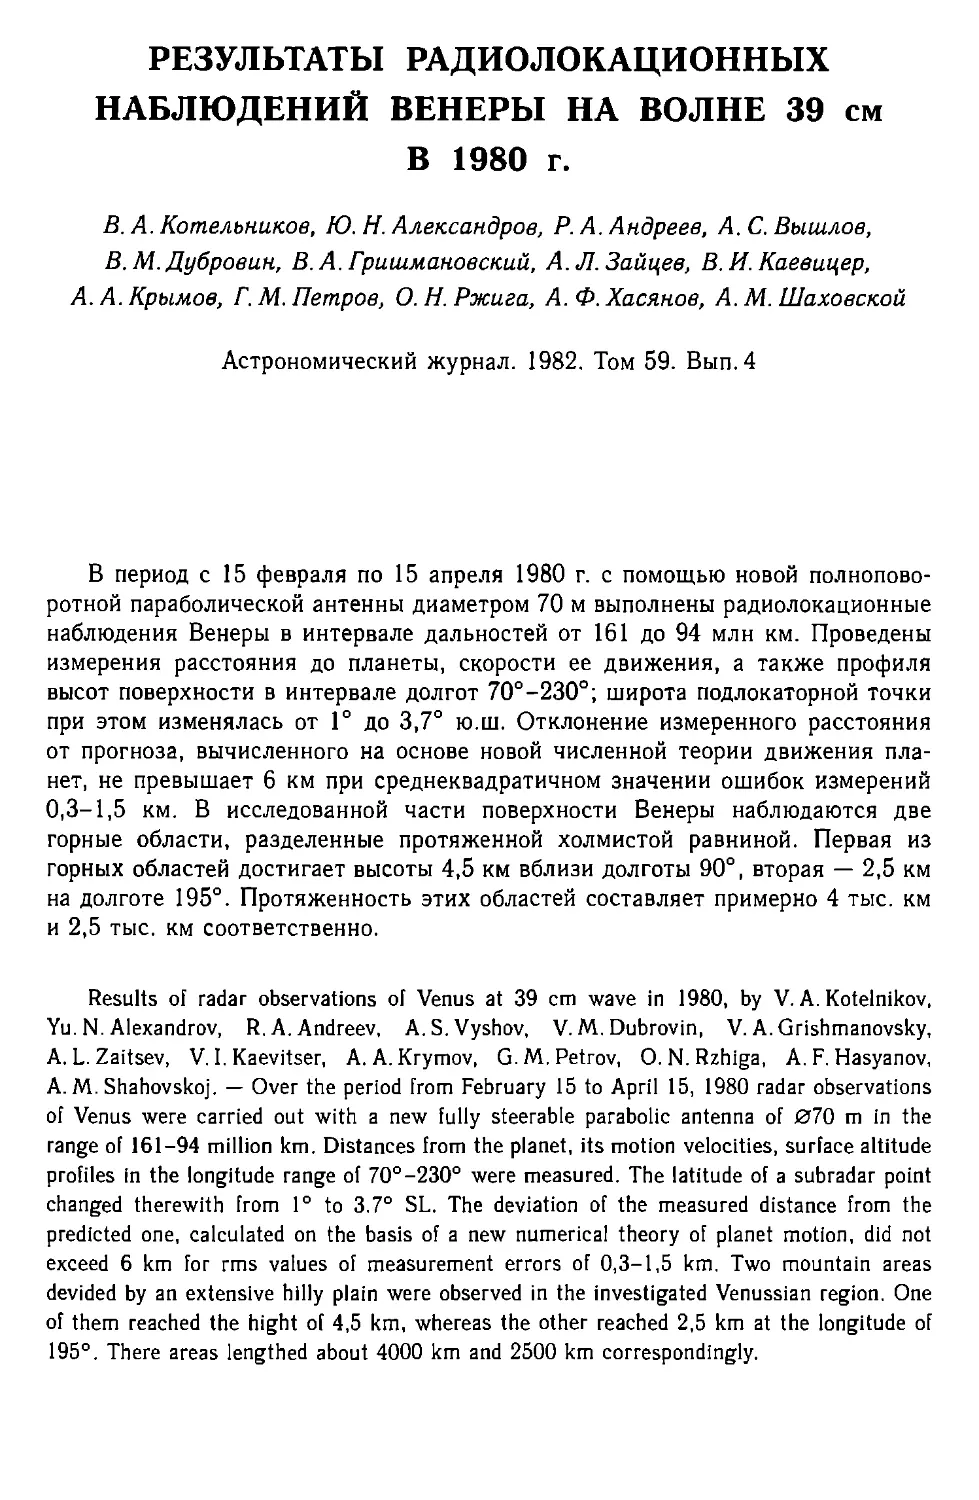 Результаты радиолокационных наблюдений Венеры на волне 39 см в 1980 г.